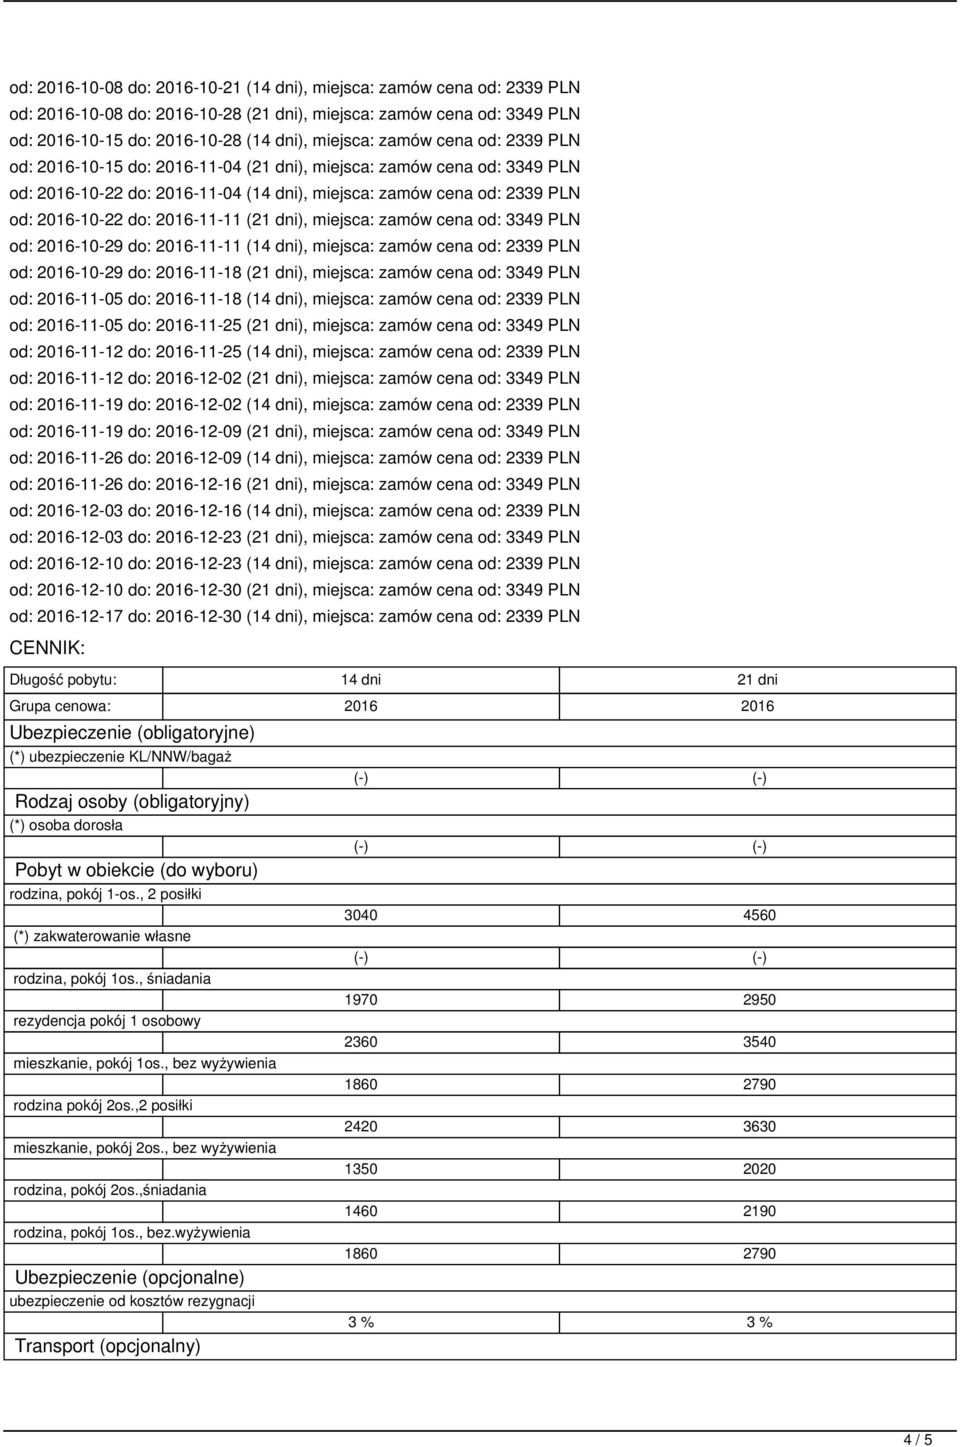 (21 dni), miejsca: zamów cena od: 3349 PLN od: 2016-10-29 do: 2016-11-11 (14 dni), miejsca: zamów cena od: 2339 PLN od: 2016-10-29 do: 2016-11-18 (21 dni), miejsca: zamów cena od: 3349 PLN od: